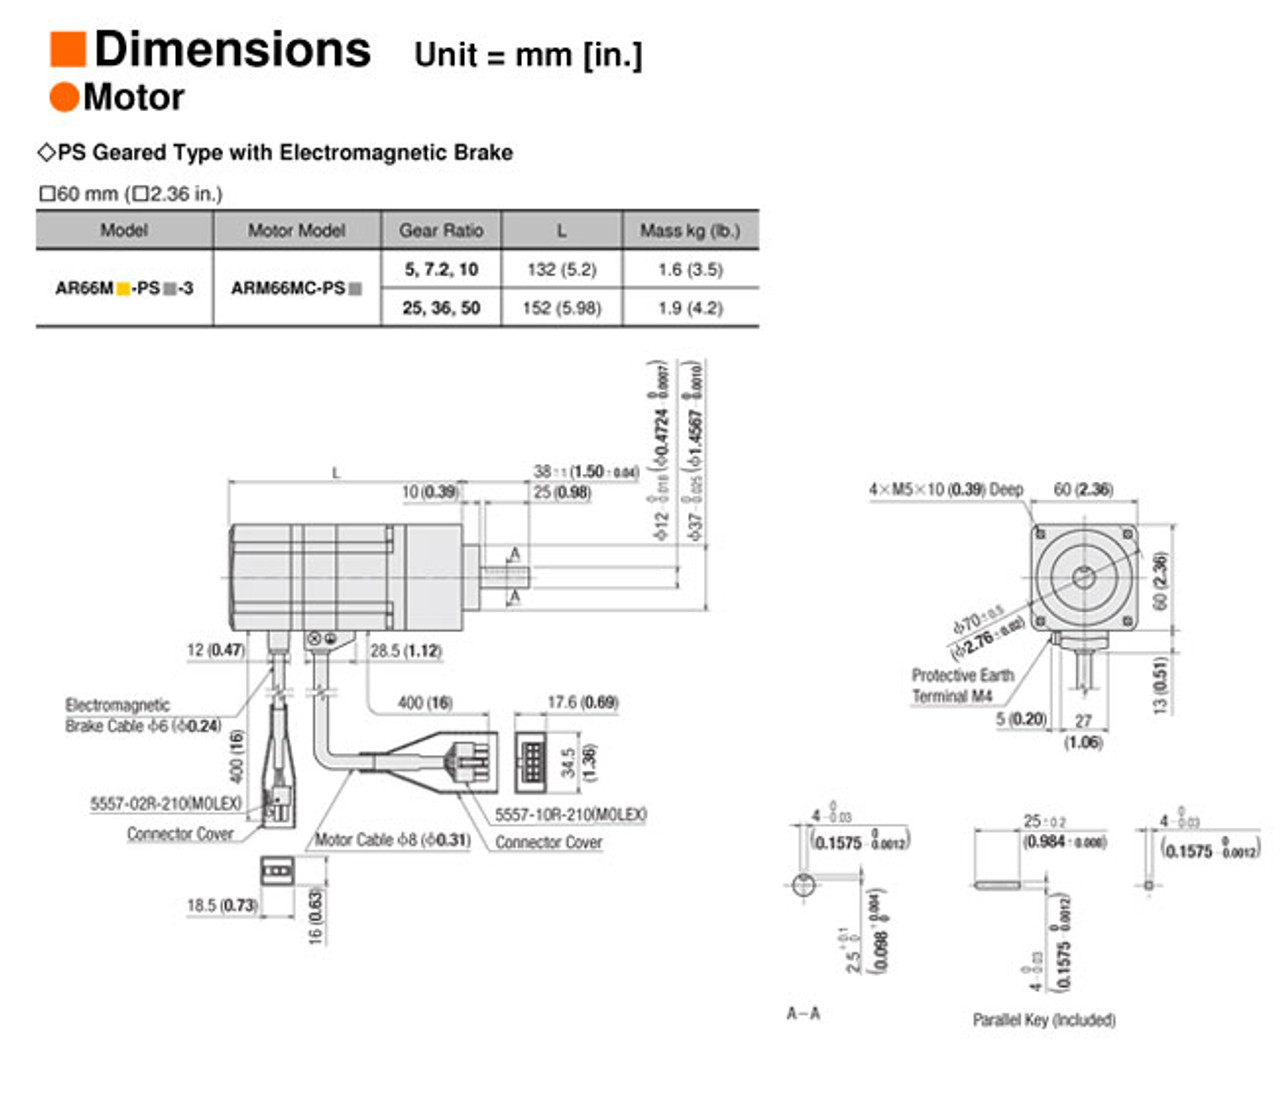 AR66MC-PS36-3 - Dimensions